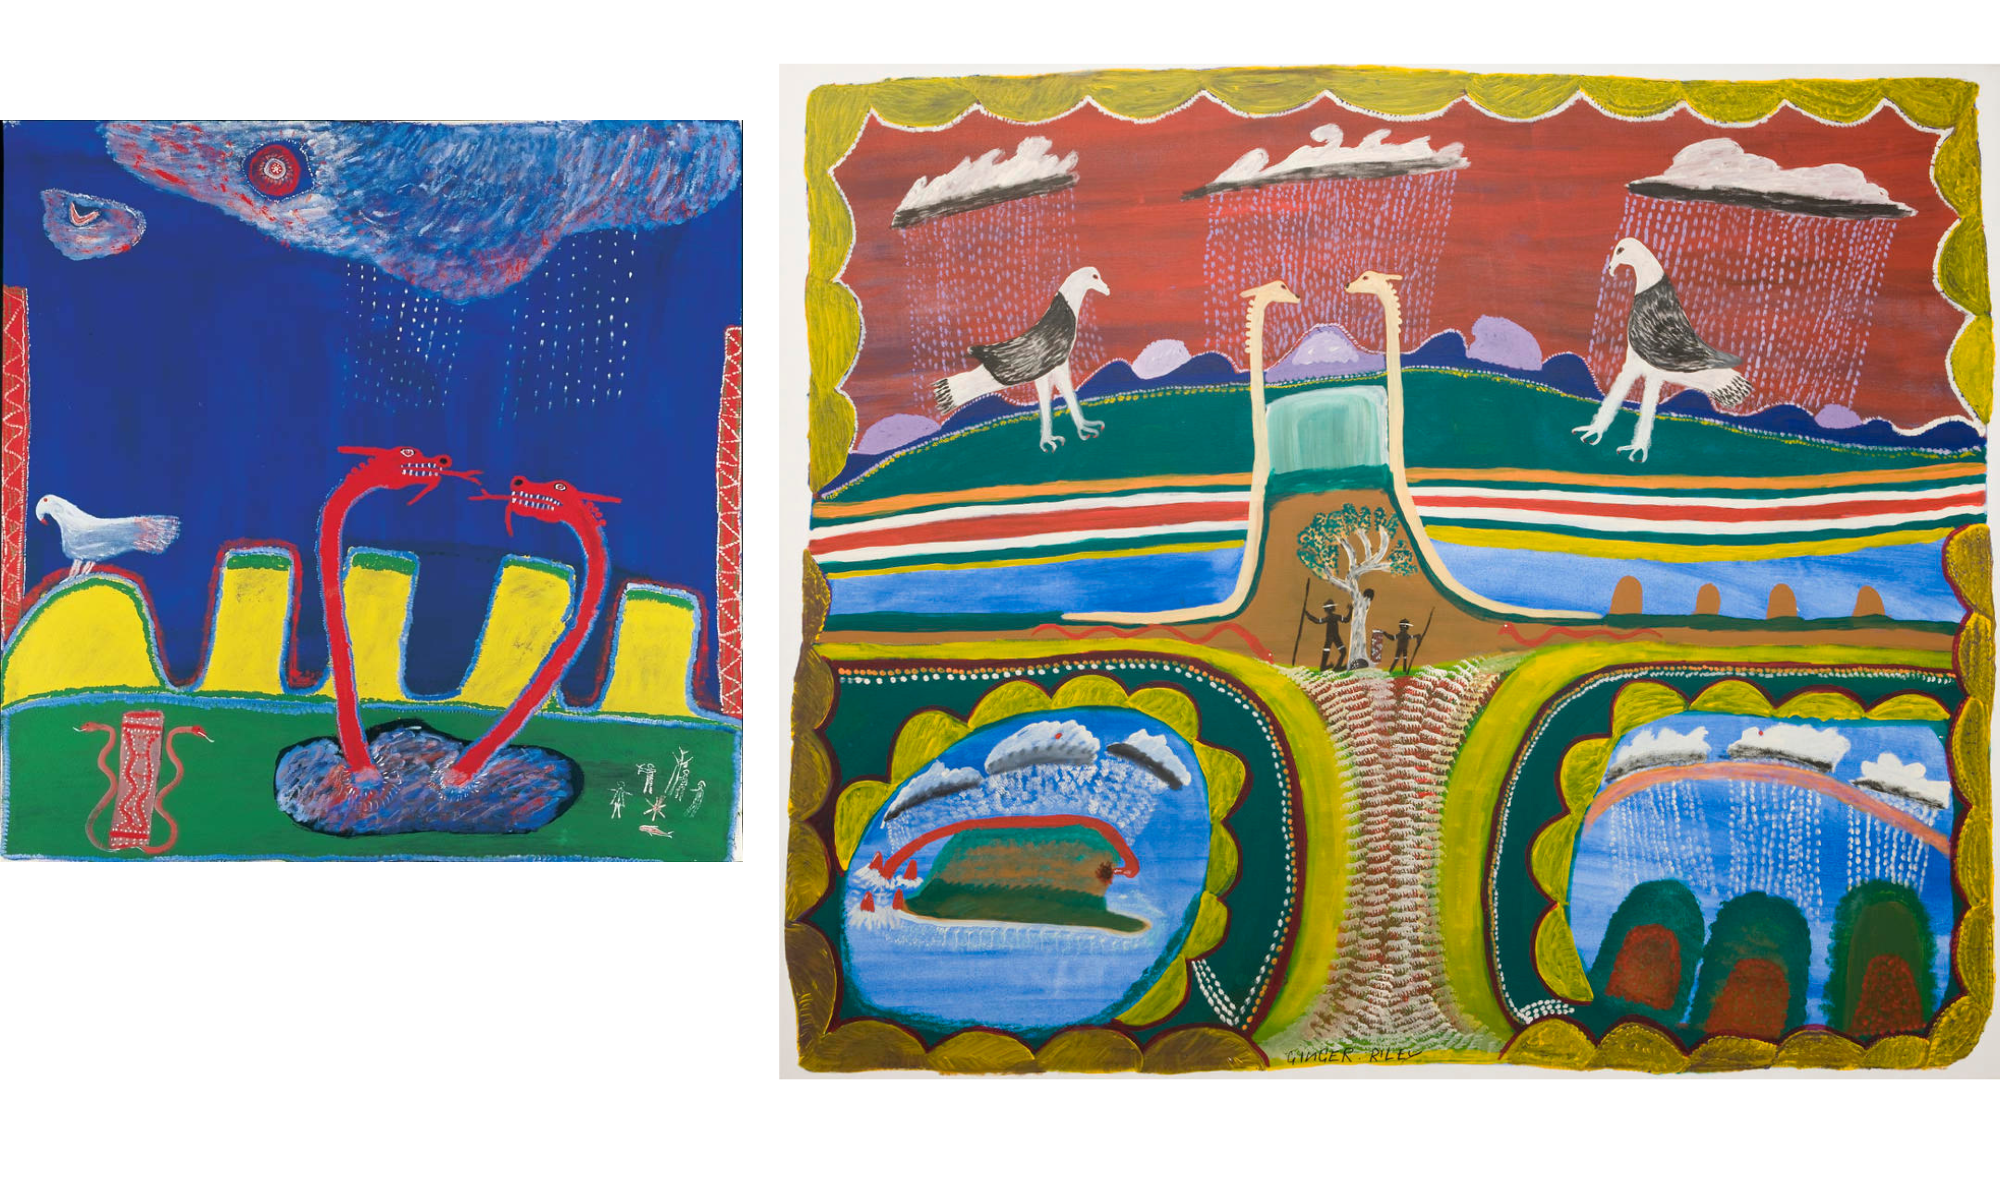 Zwei Aborigine-Kunstwerke von Ginger Riley Munduwalawala